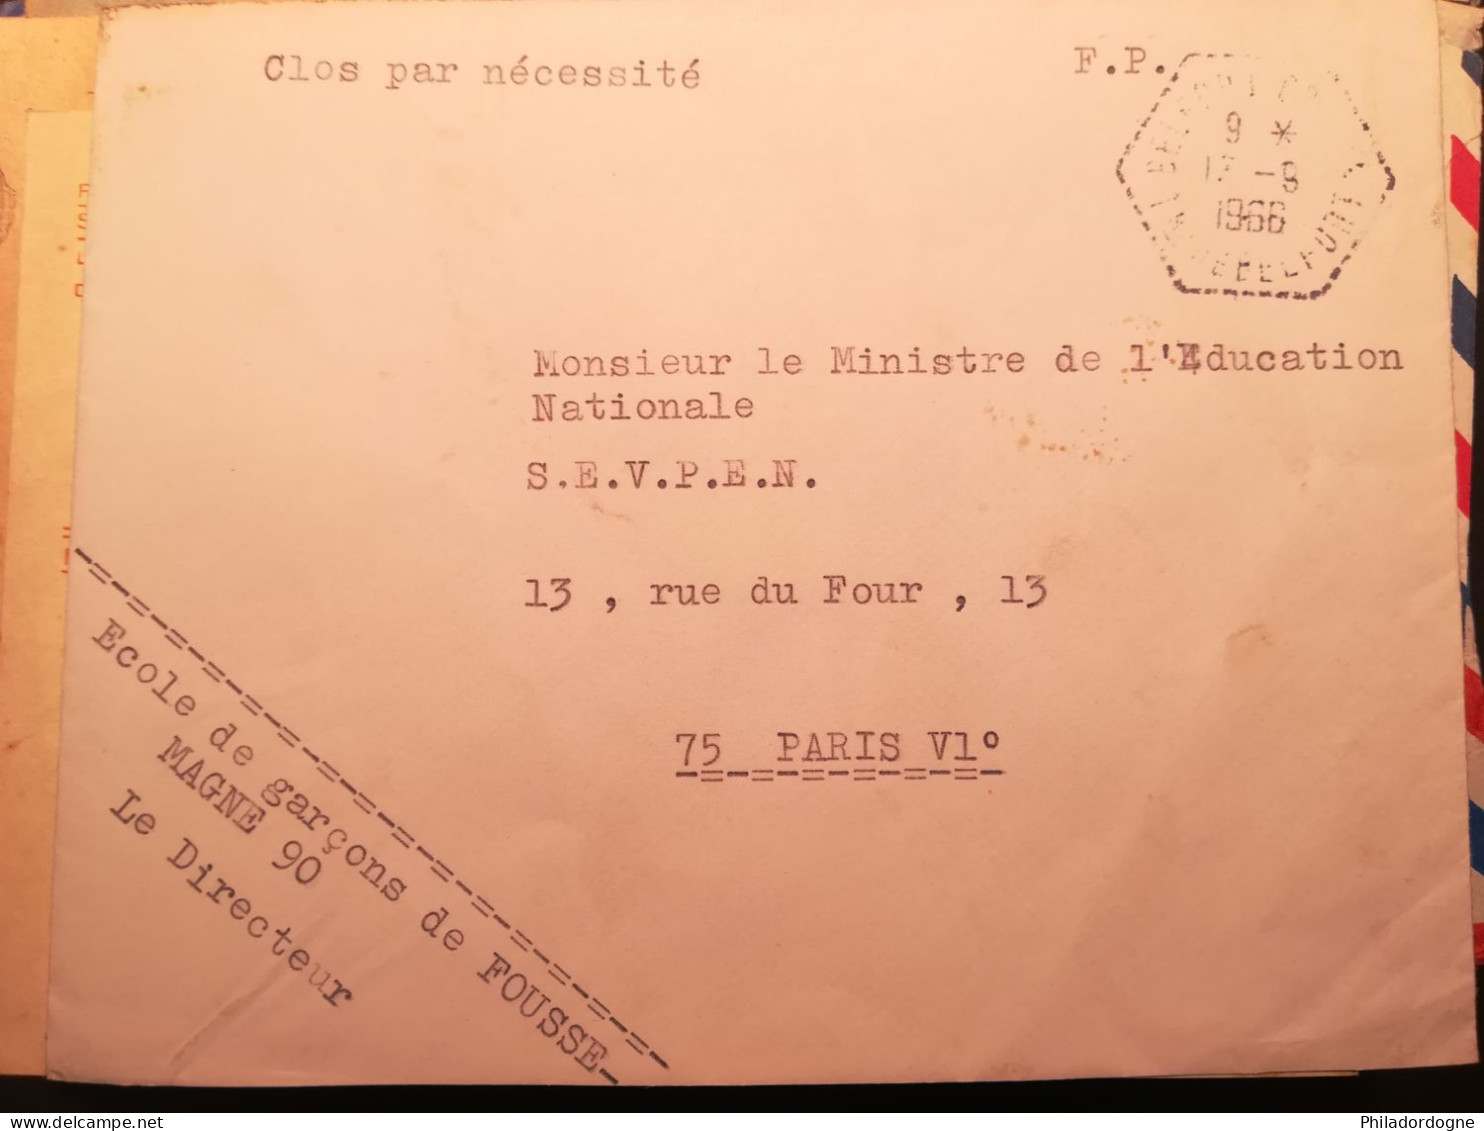 France - Lot de 75 documents en FM périodes diverses à trier - poids 286 grammes